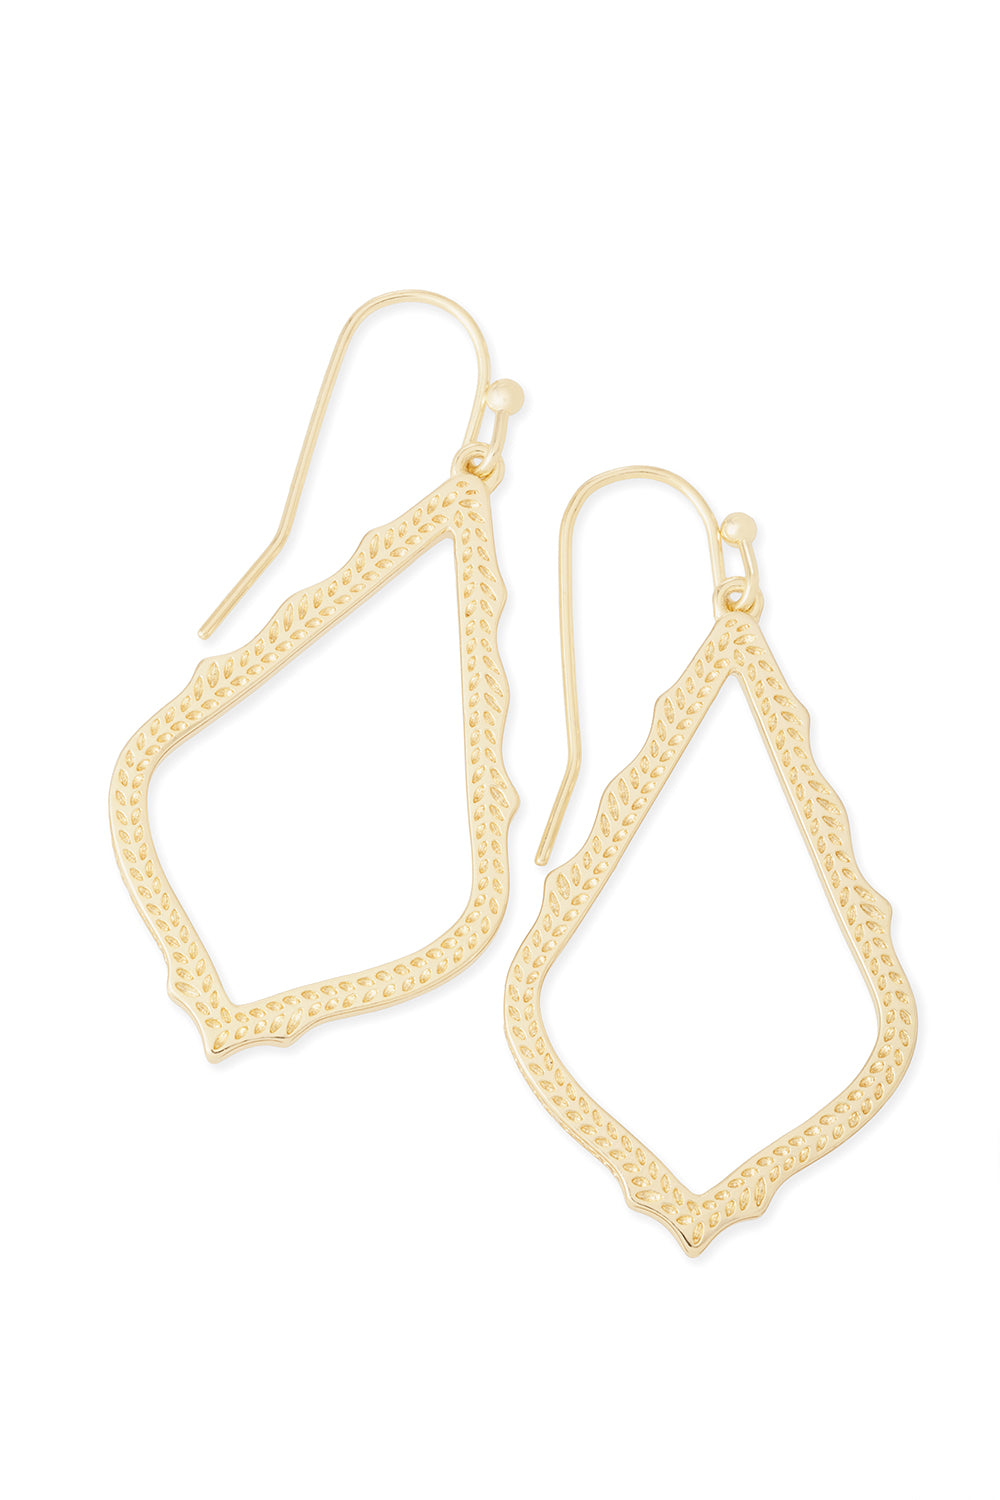 Kendra Scott: Sophia Drop Earrings - Gold | Makk Fashions